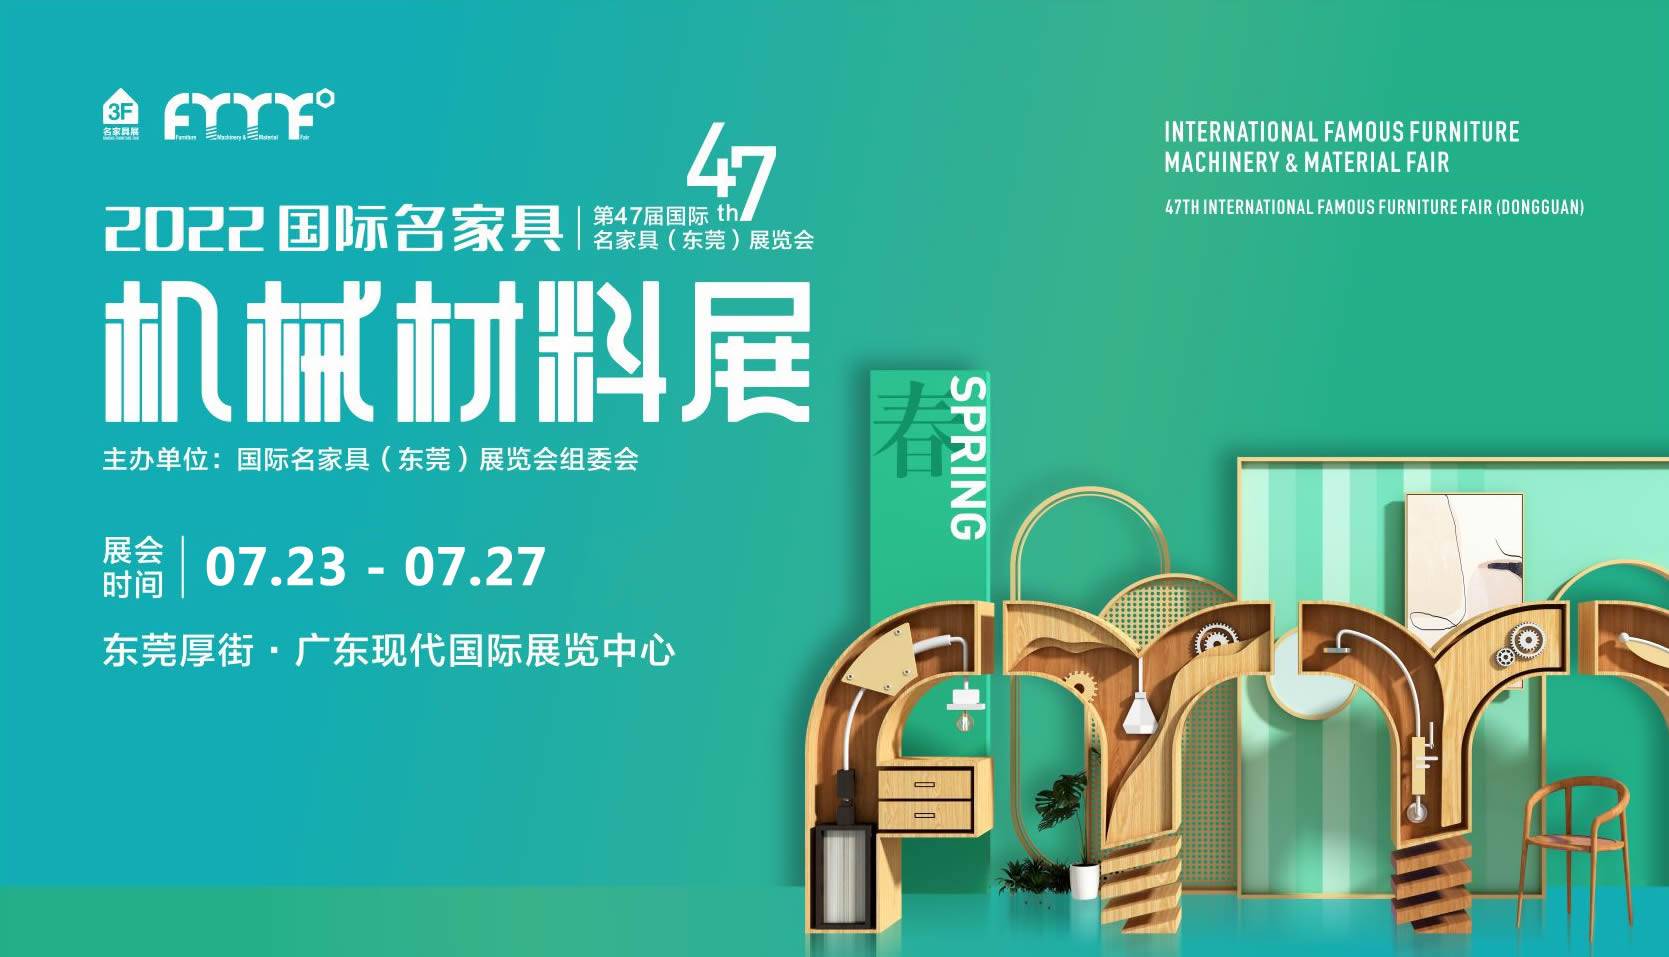 2022年第47届国际名家具（东莞）展览会将于7月23日至27日举行